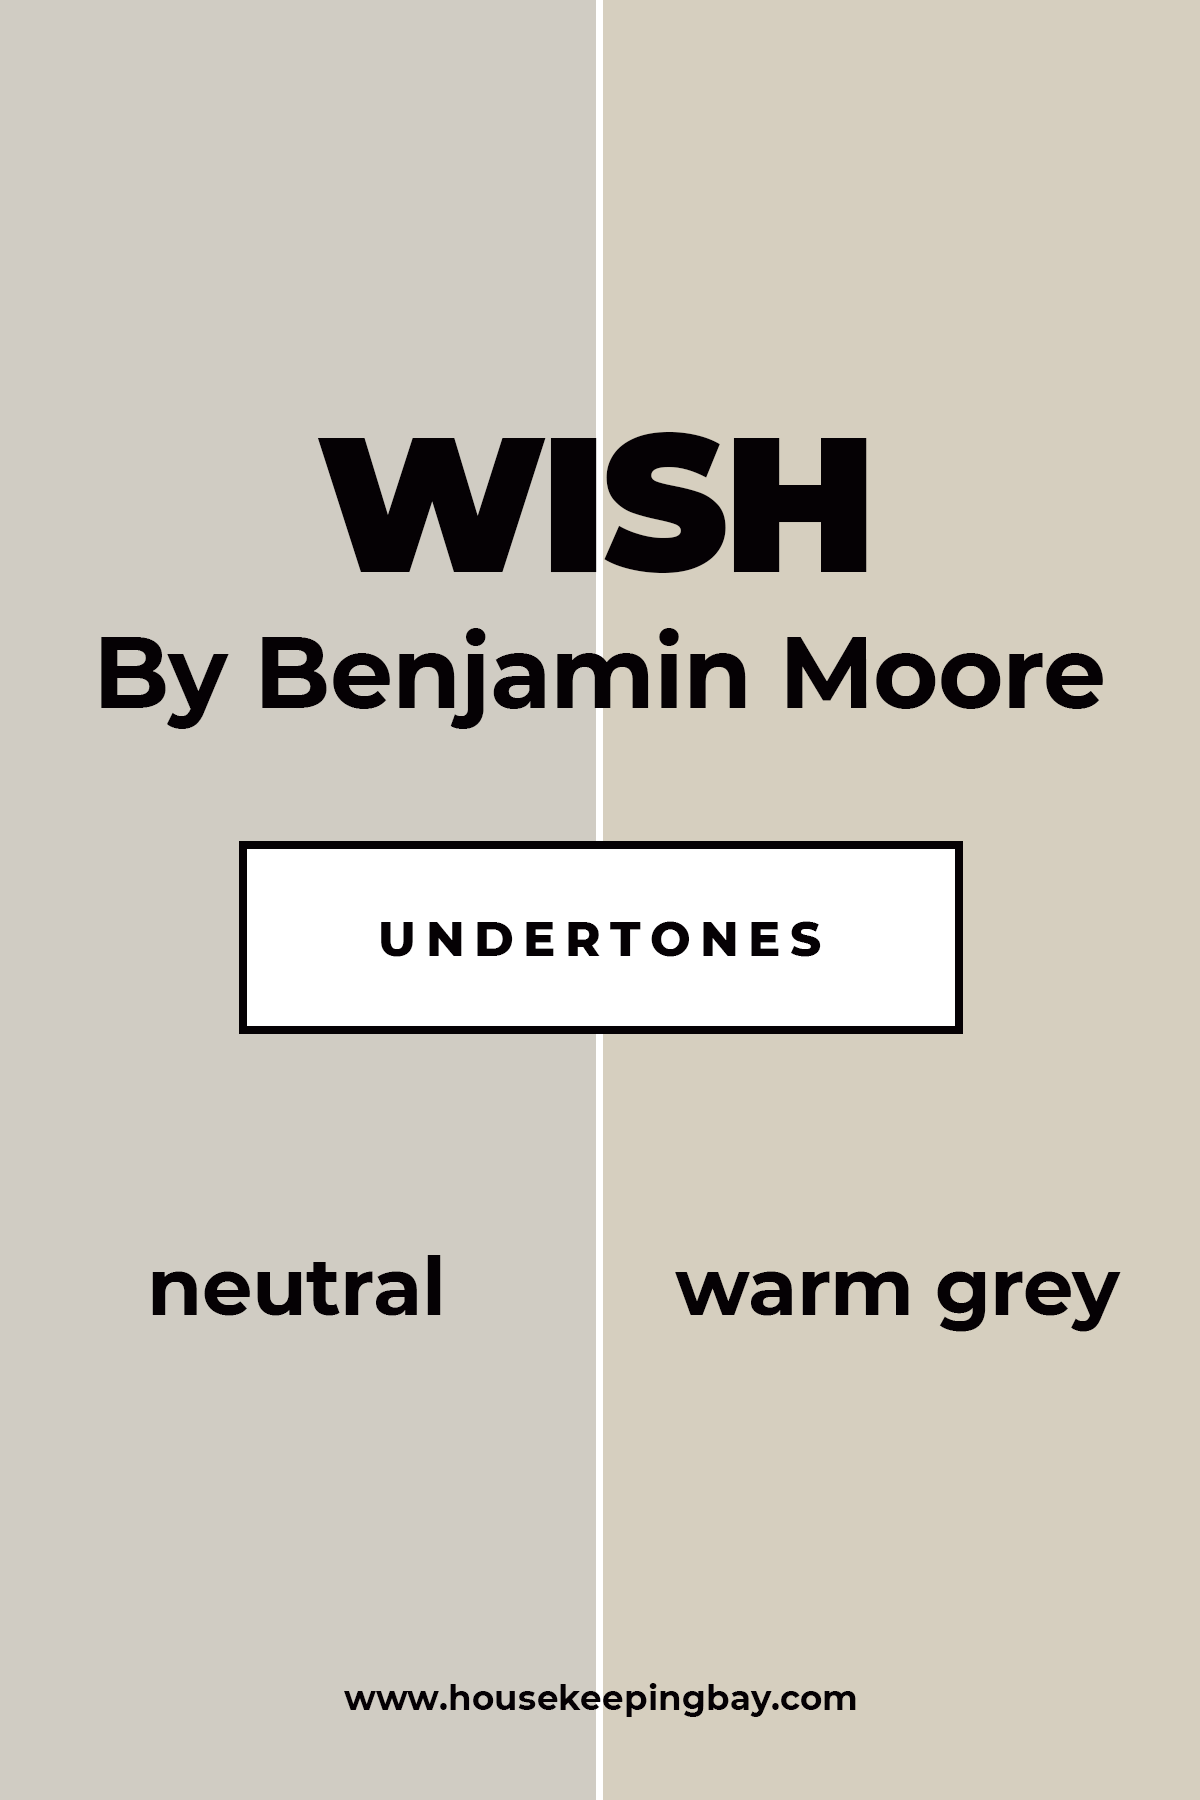 Benjamin Moore Wish Undertones